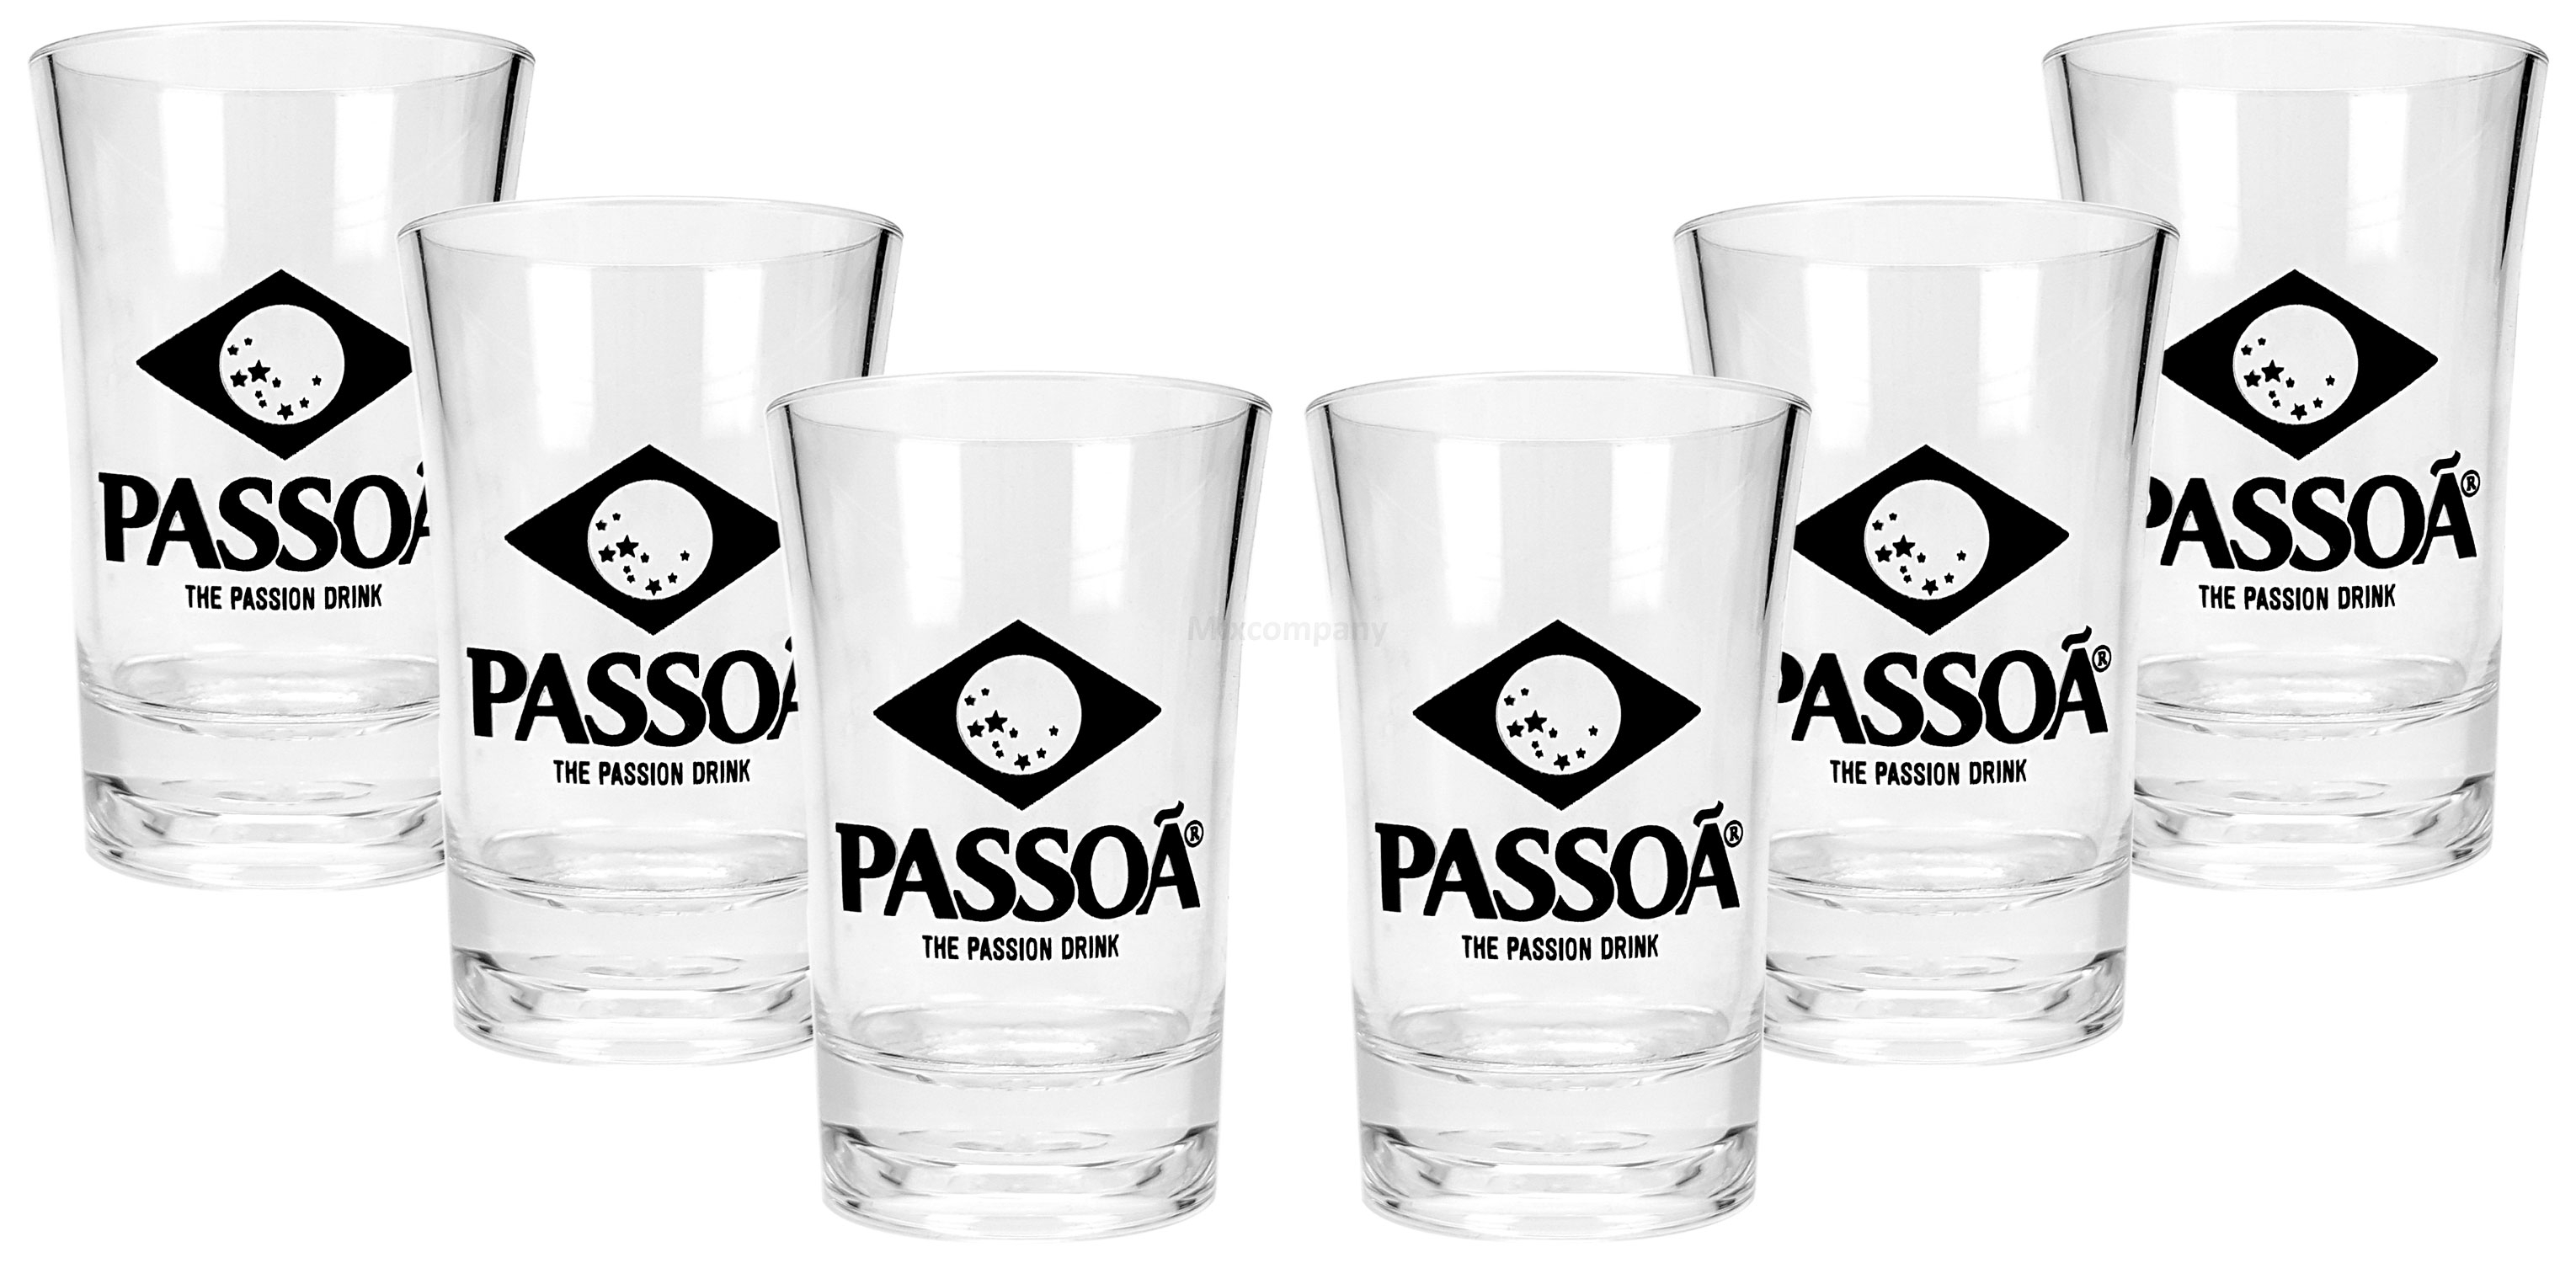 Passoa Shotglas Glas Gläser Schnapsglas Becher Kunsstoff - 12x Shotgläser